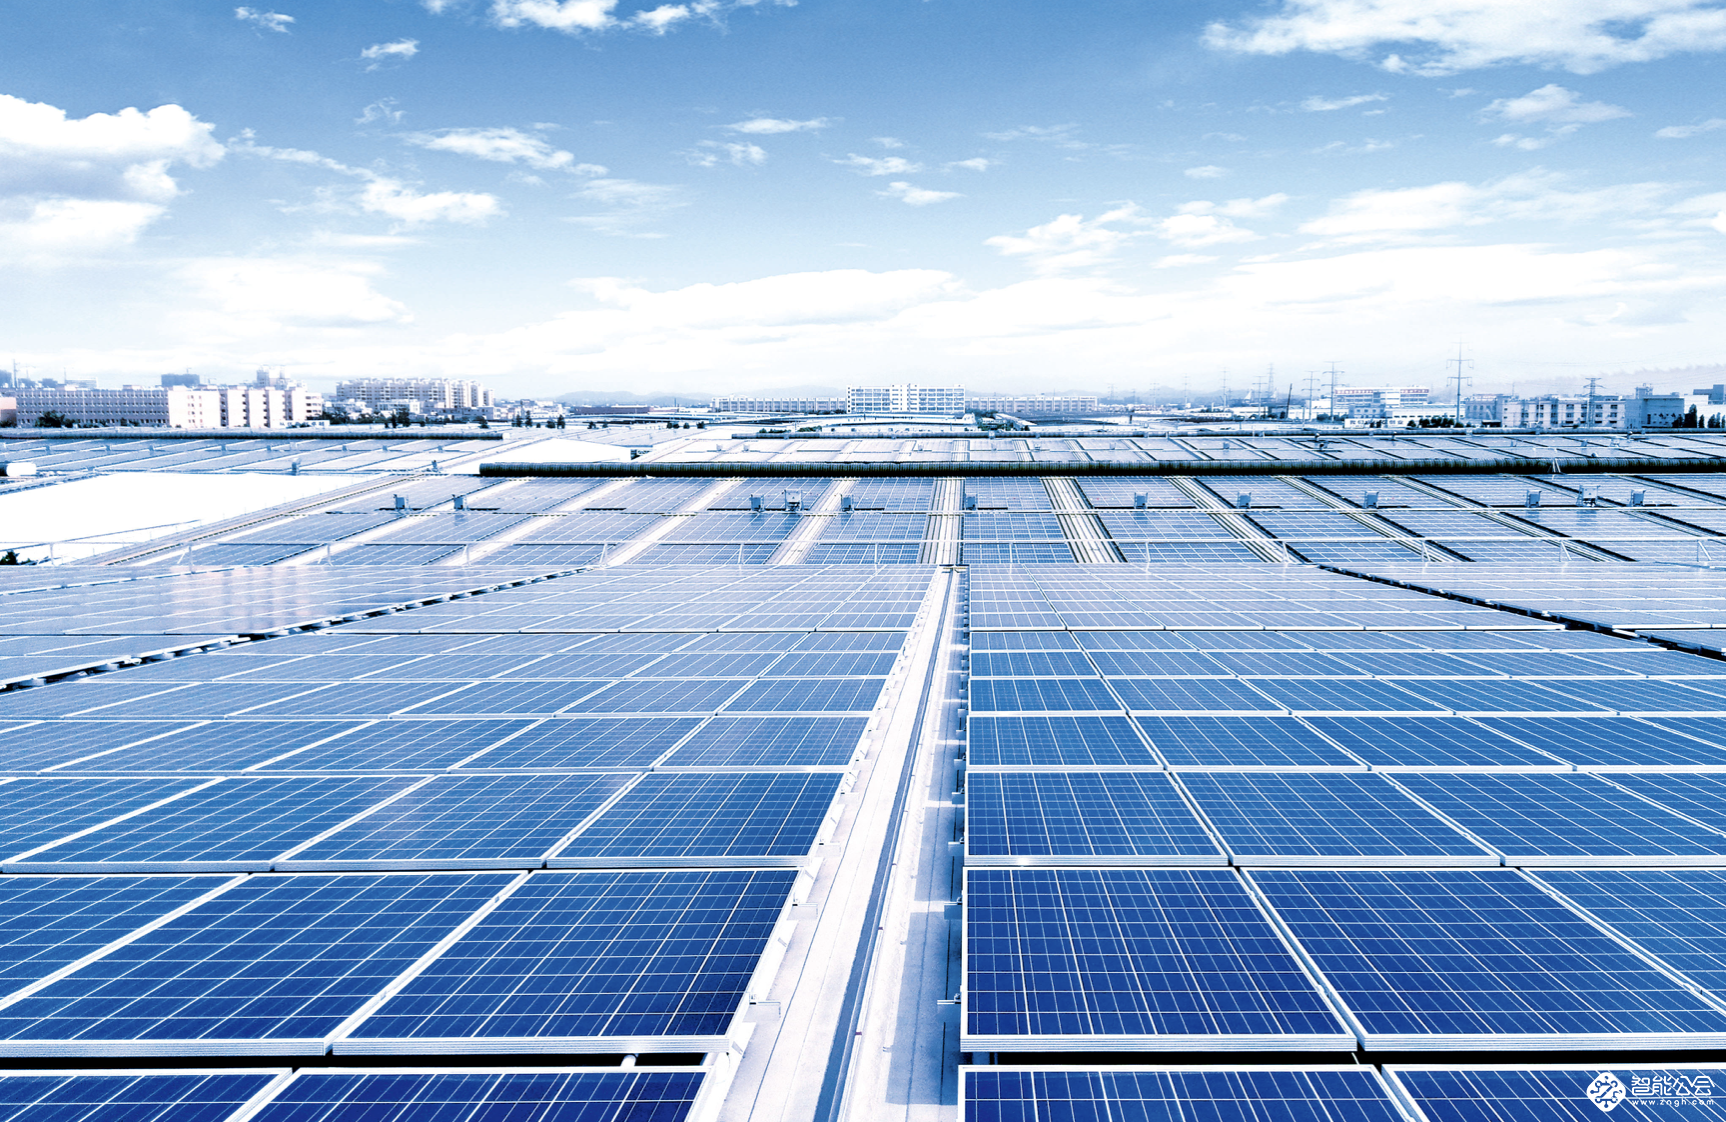 格兰仕光伏发电项目5年供应清洁能源3亿千瓦时 智能公会